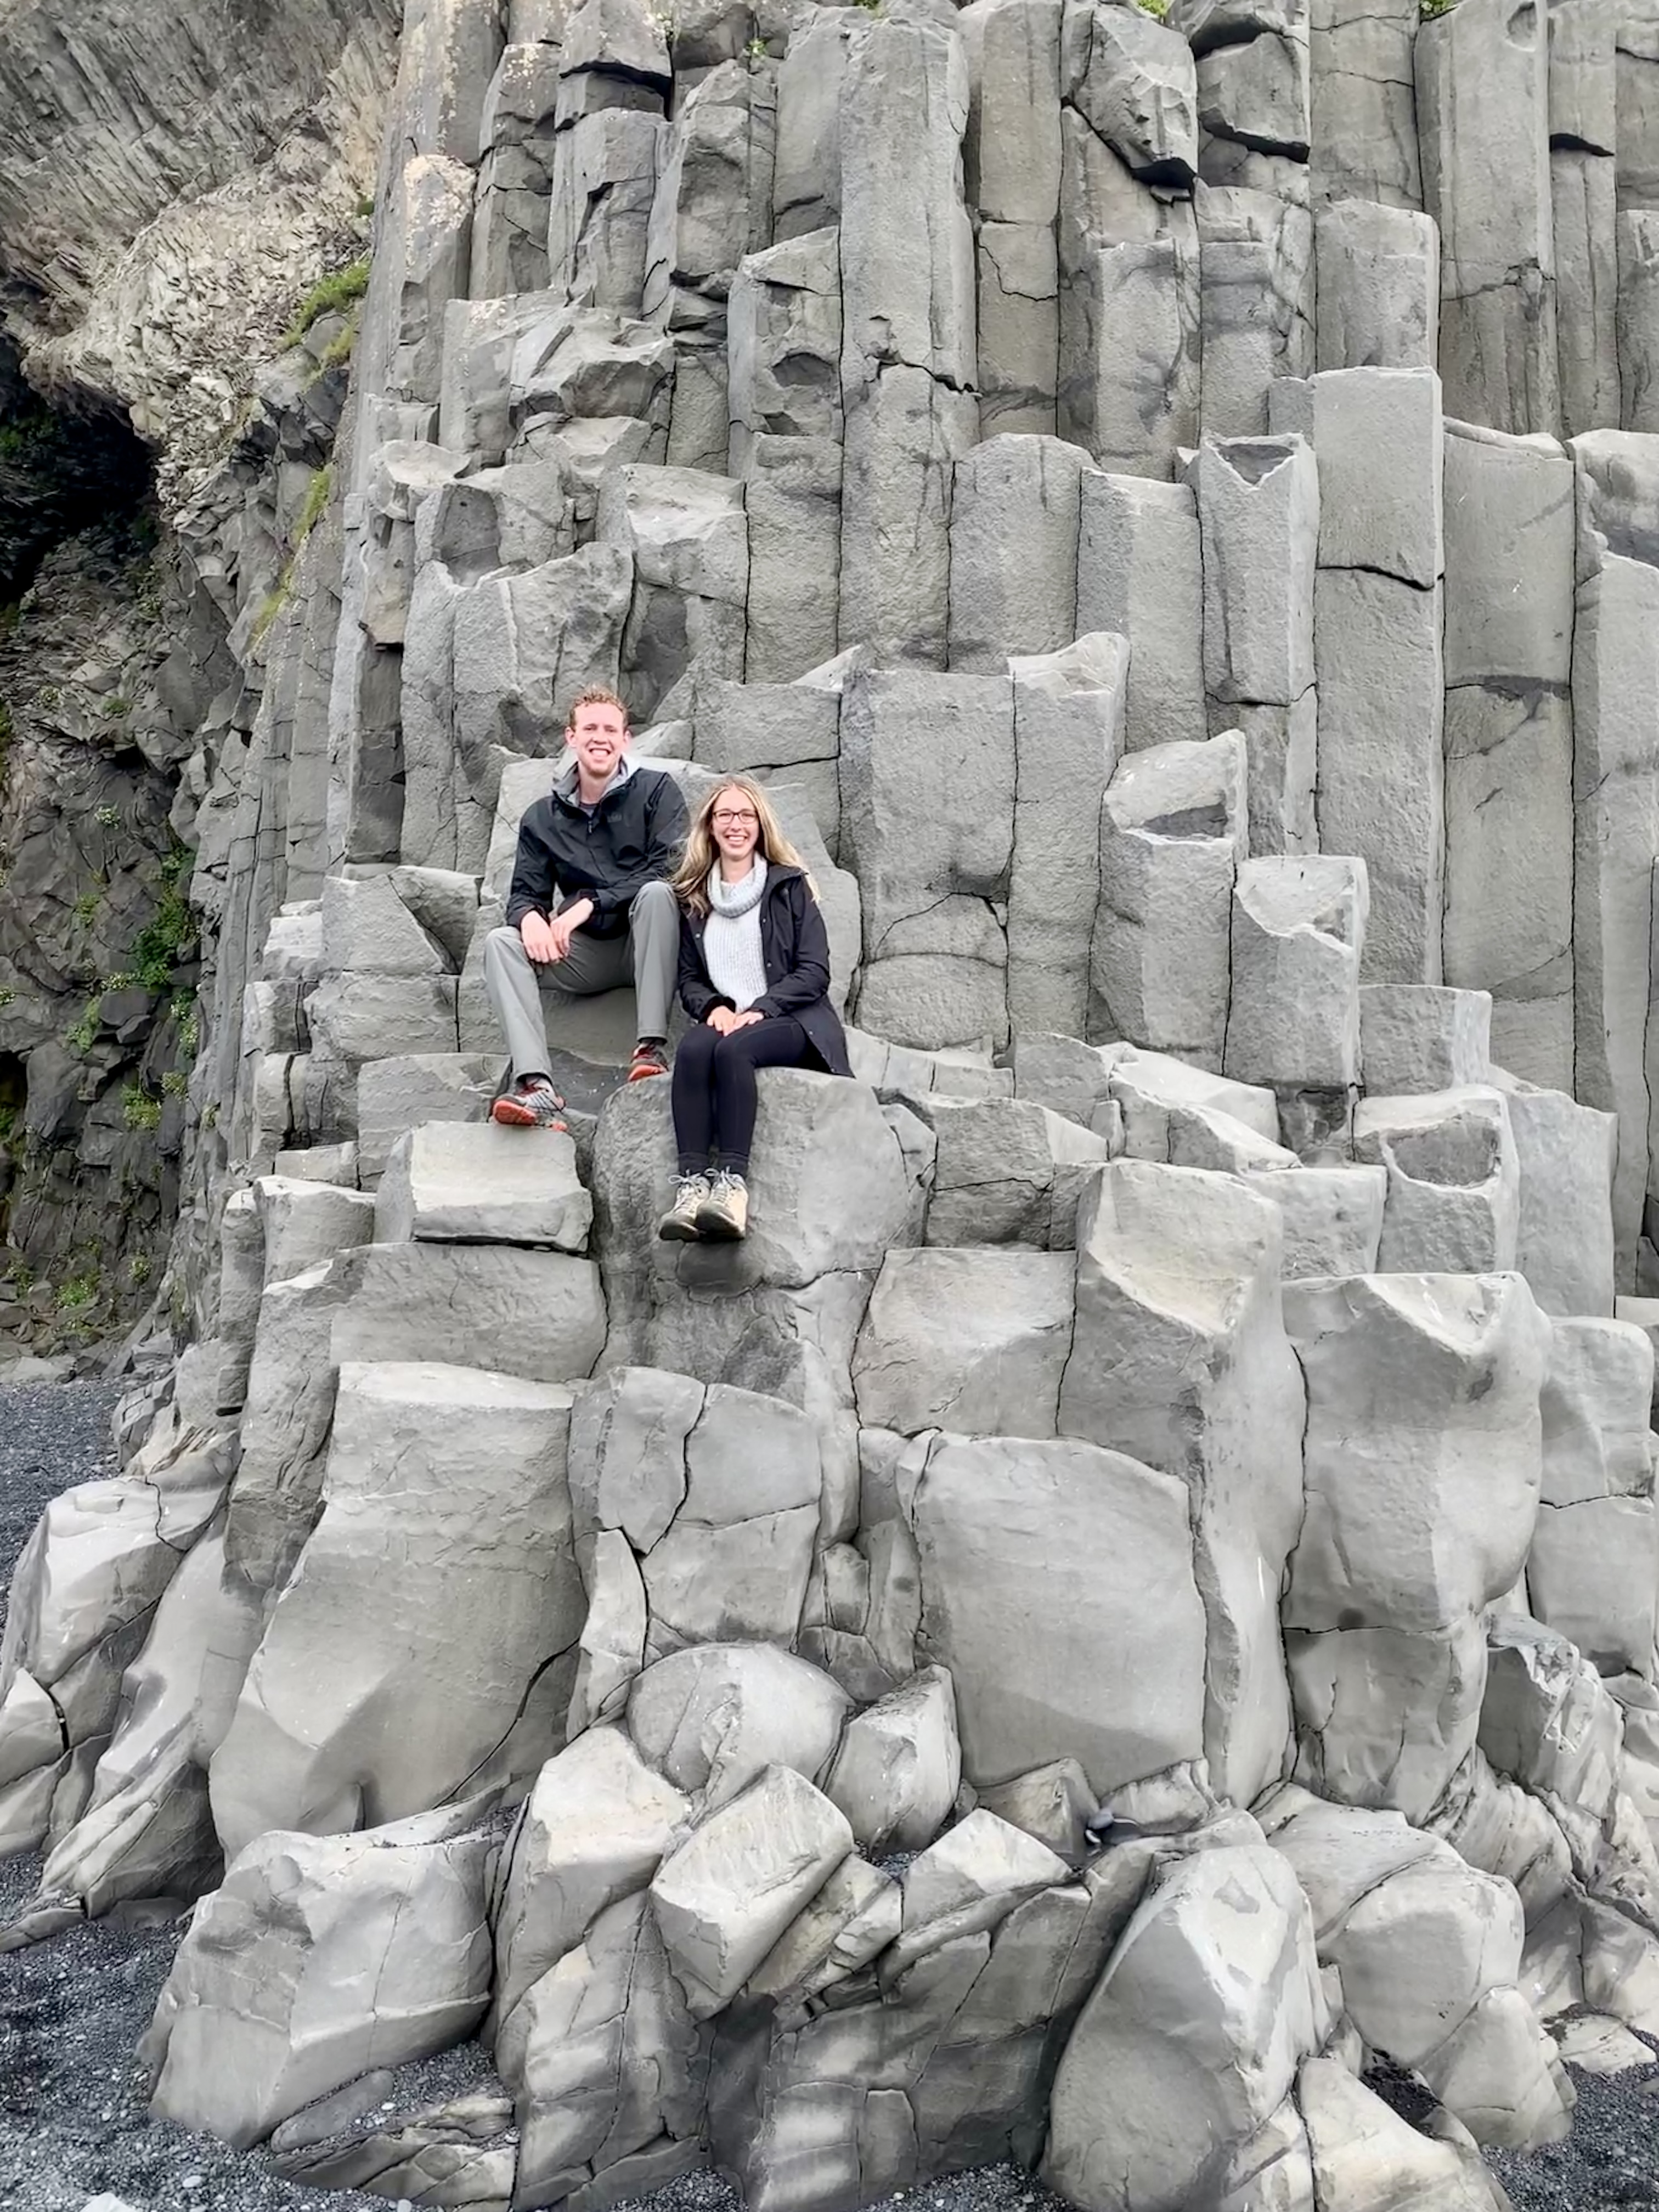 Mark and Amanda sitting on basalt columns